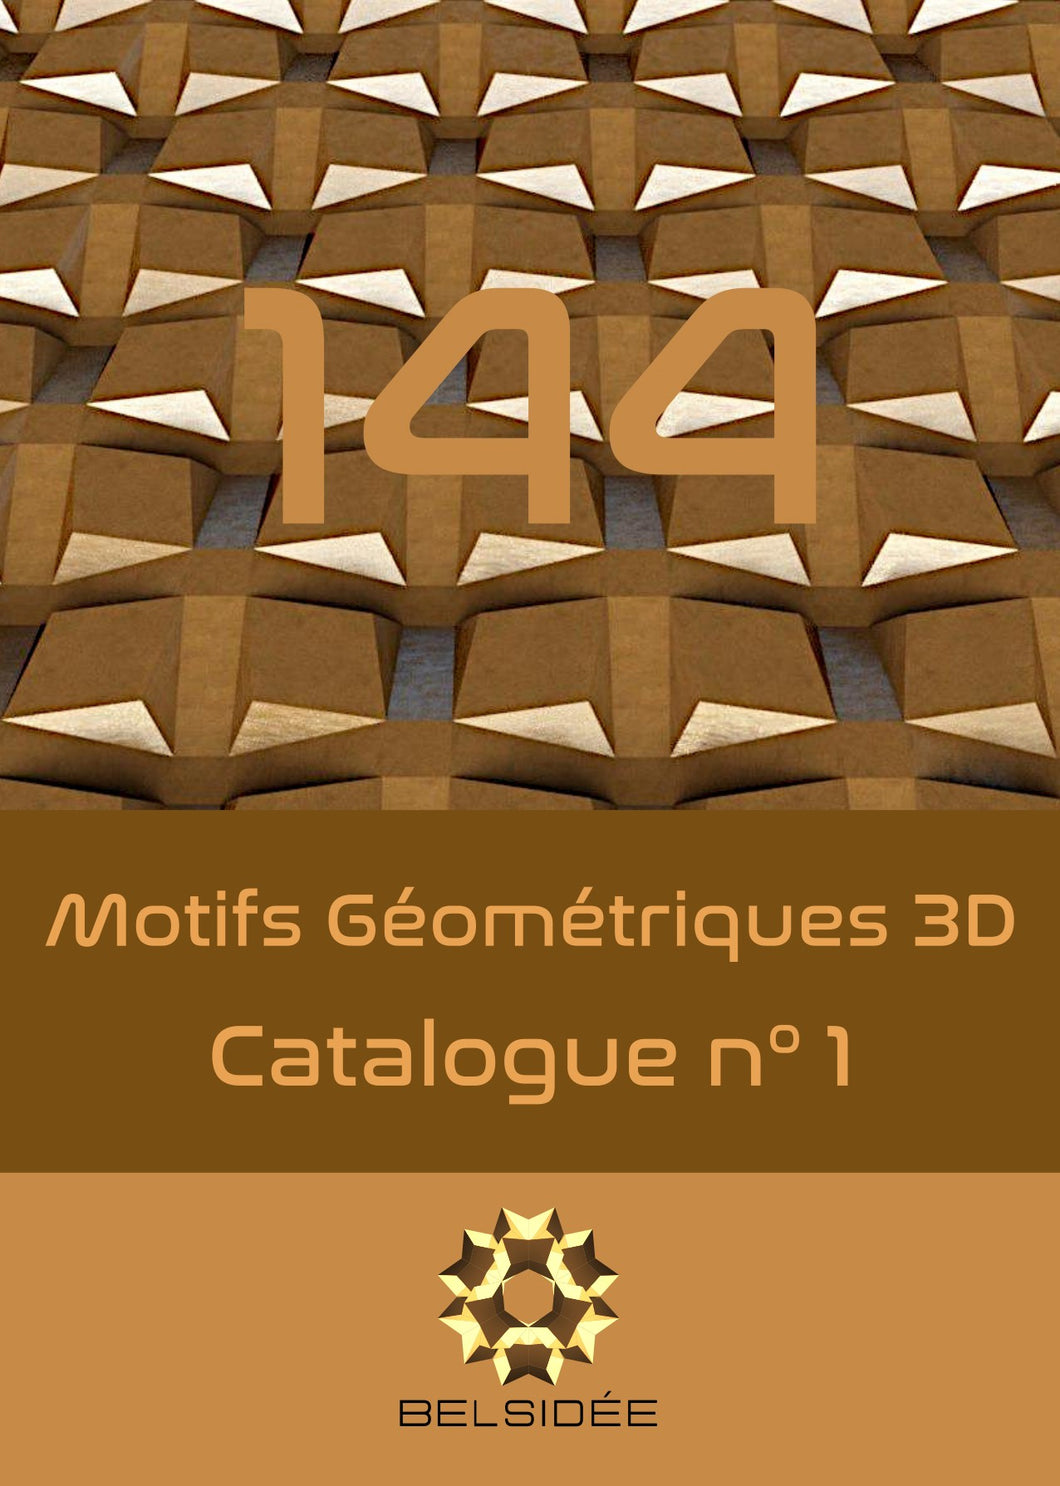 Catalogue n°1 - 144 motifs géométriques 3D